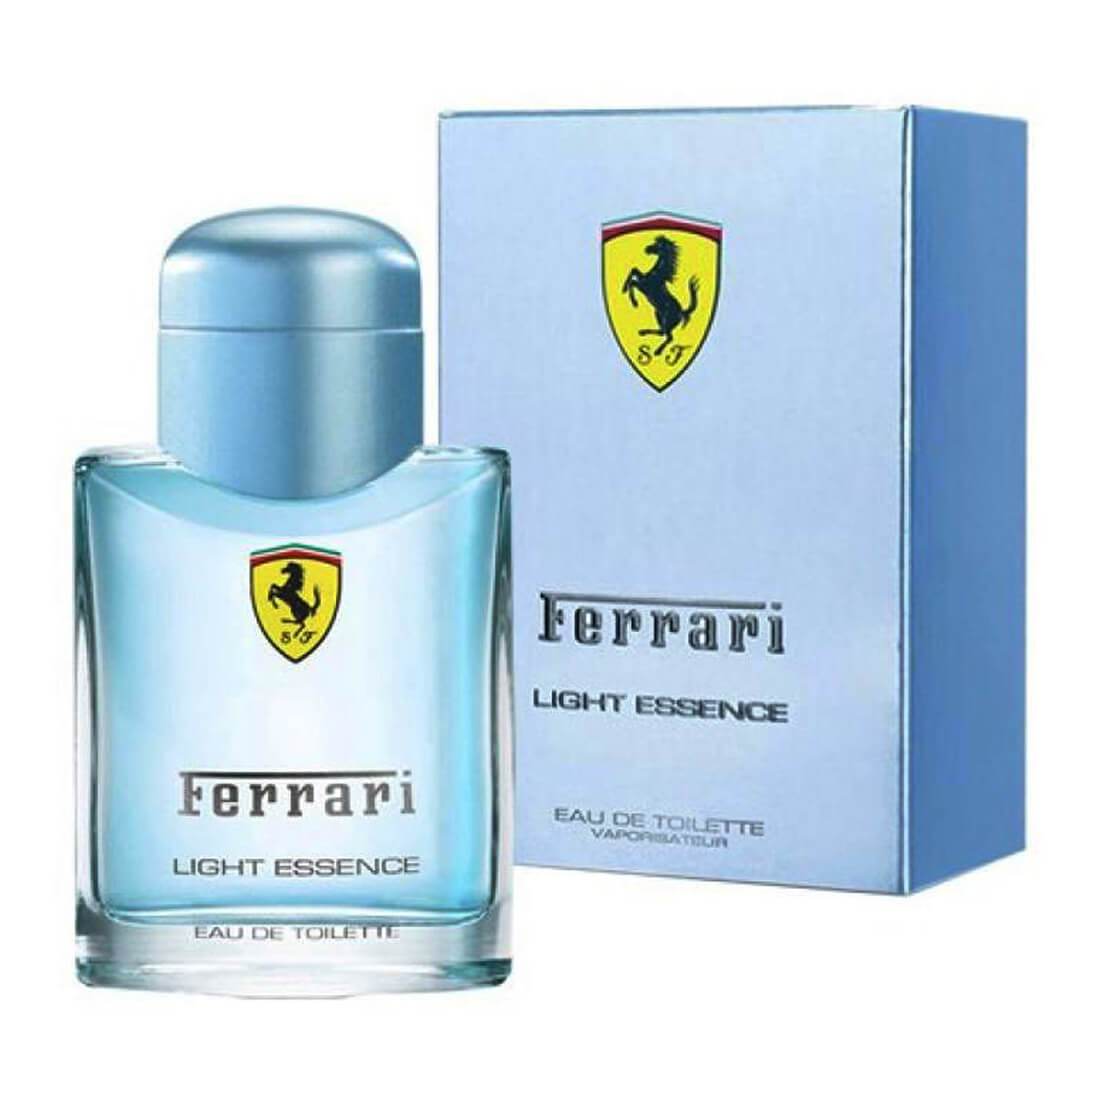 Ferrari Light Essence Perfume For Men - 125ml